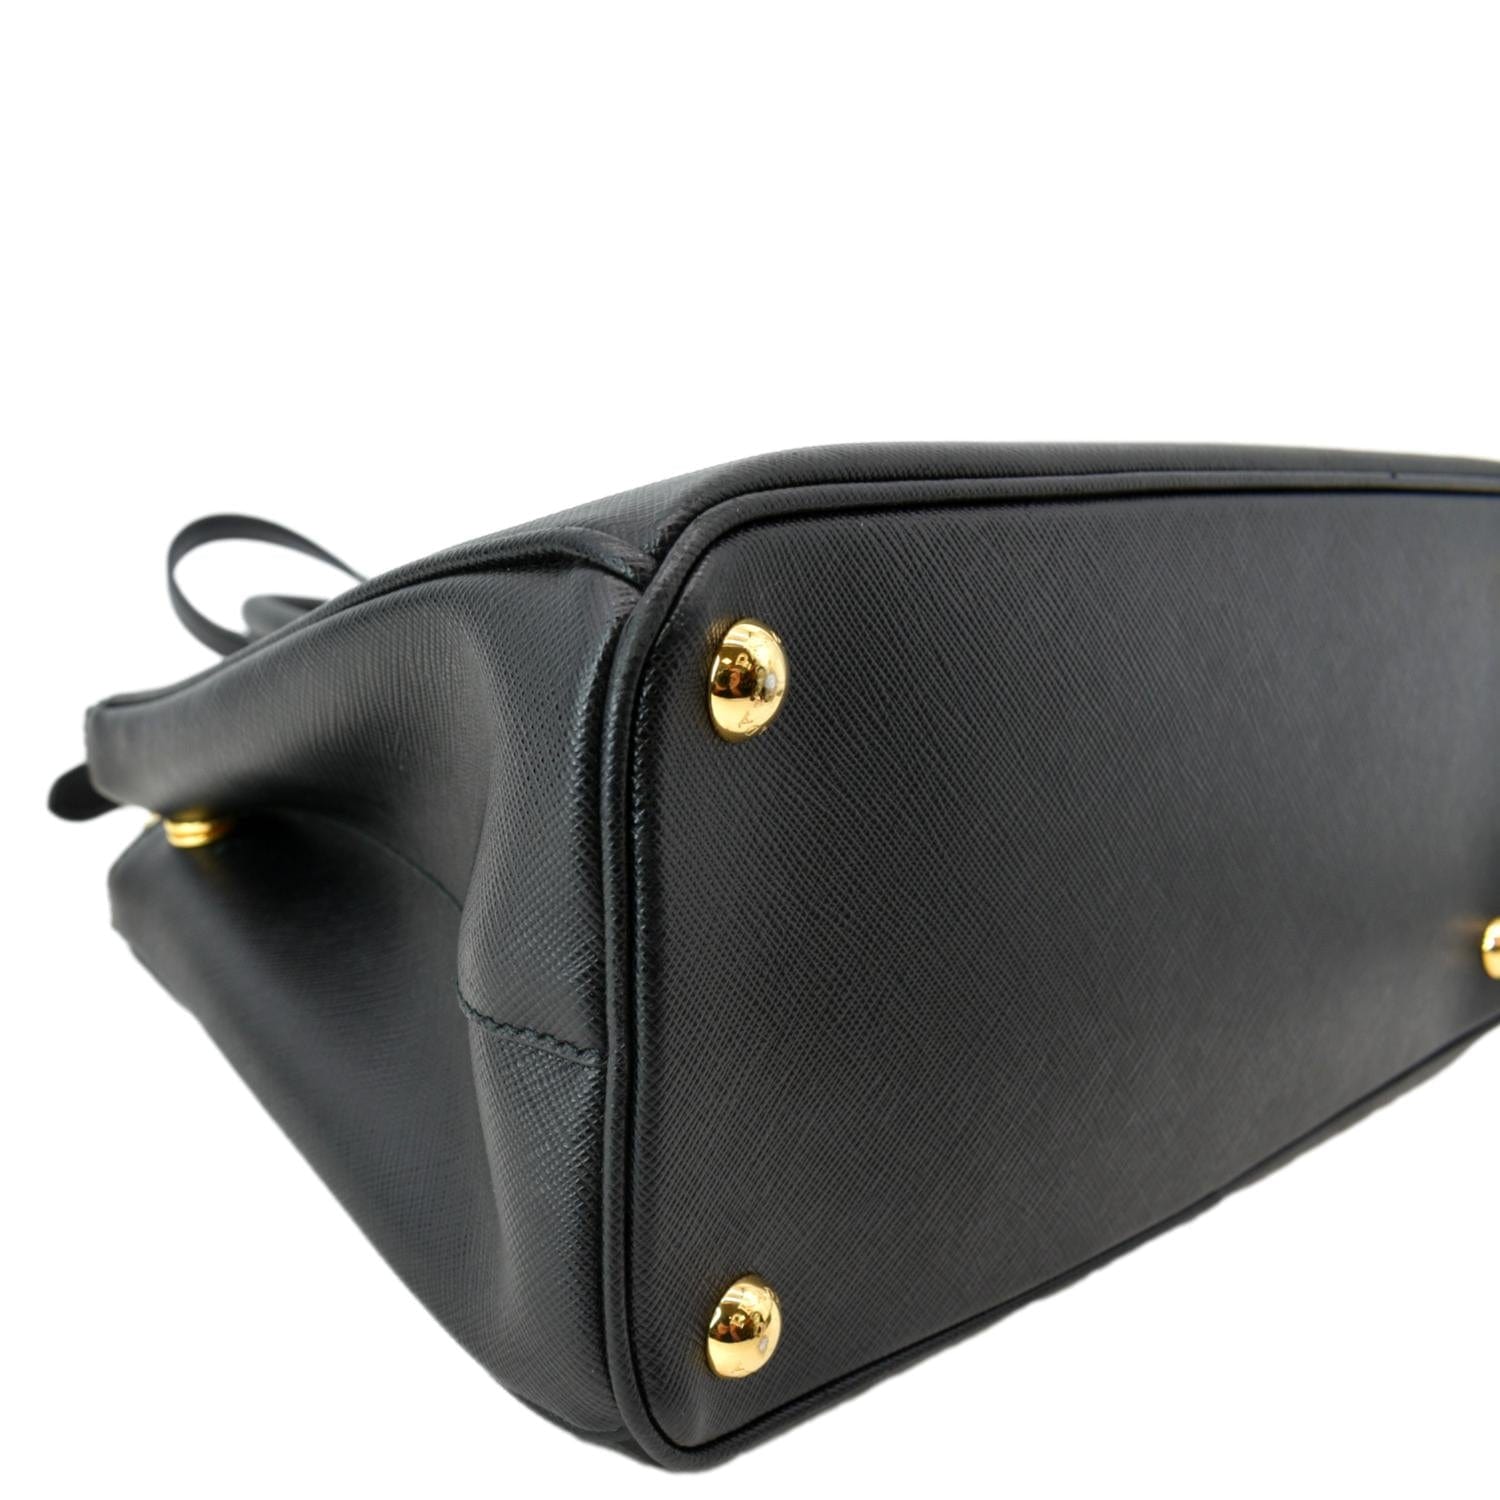 Prada Saffiano Cuir Double Zip Tote - Neutrals Totes, Handbags - PRA879370